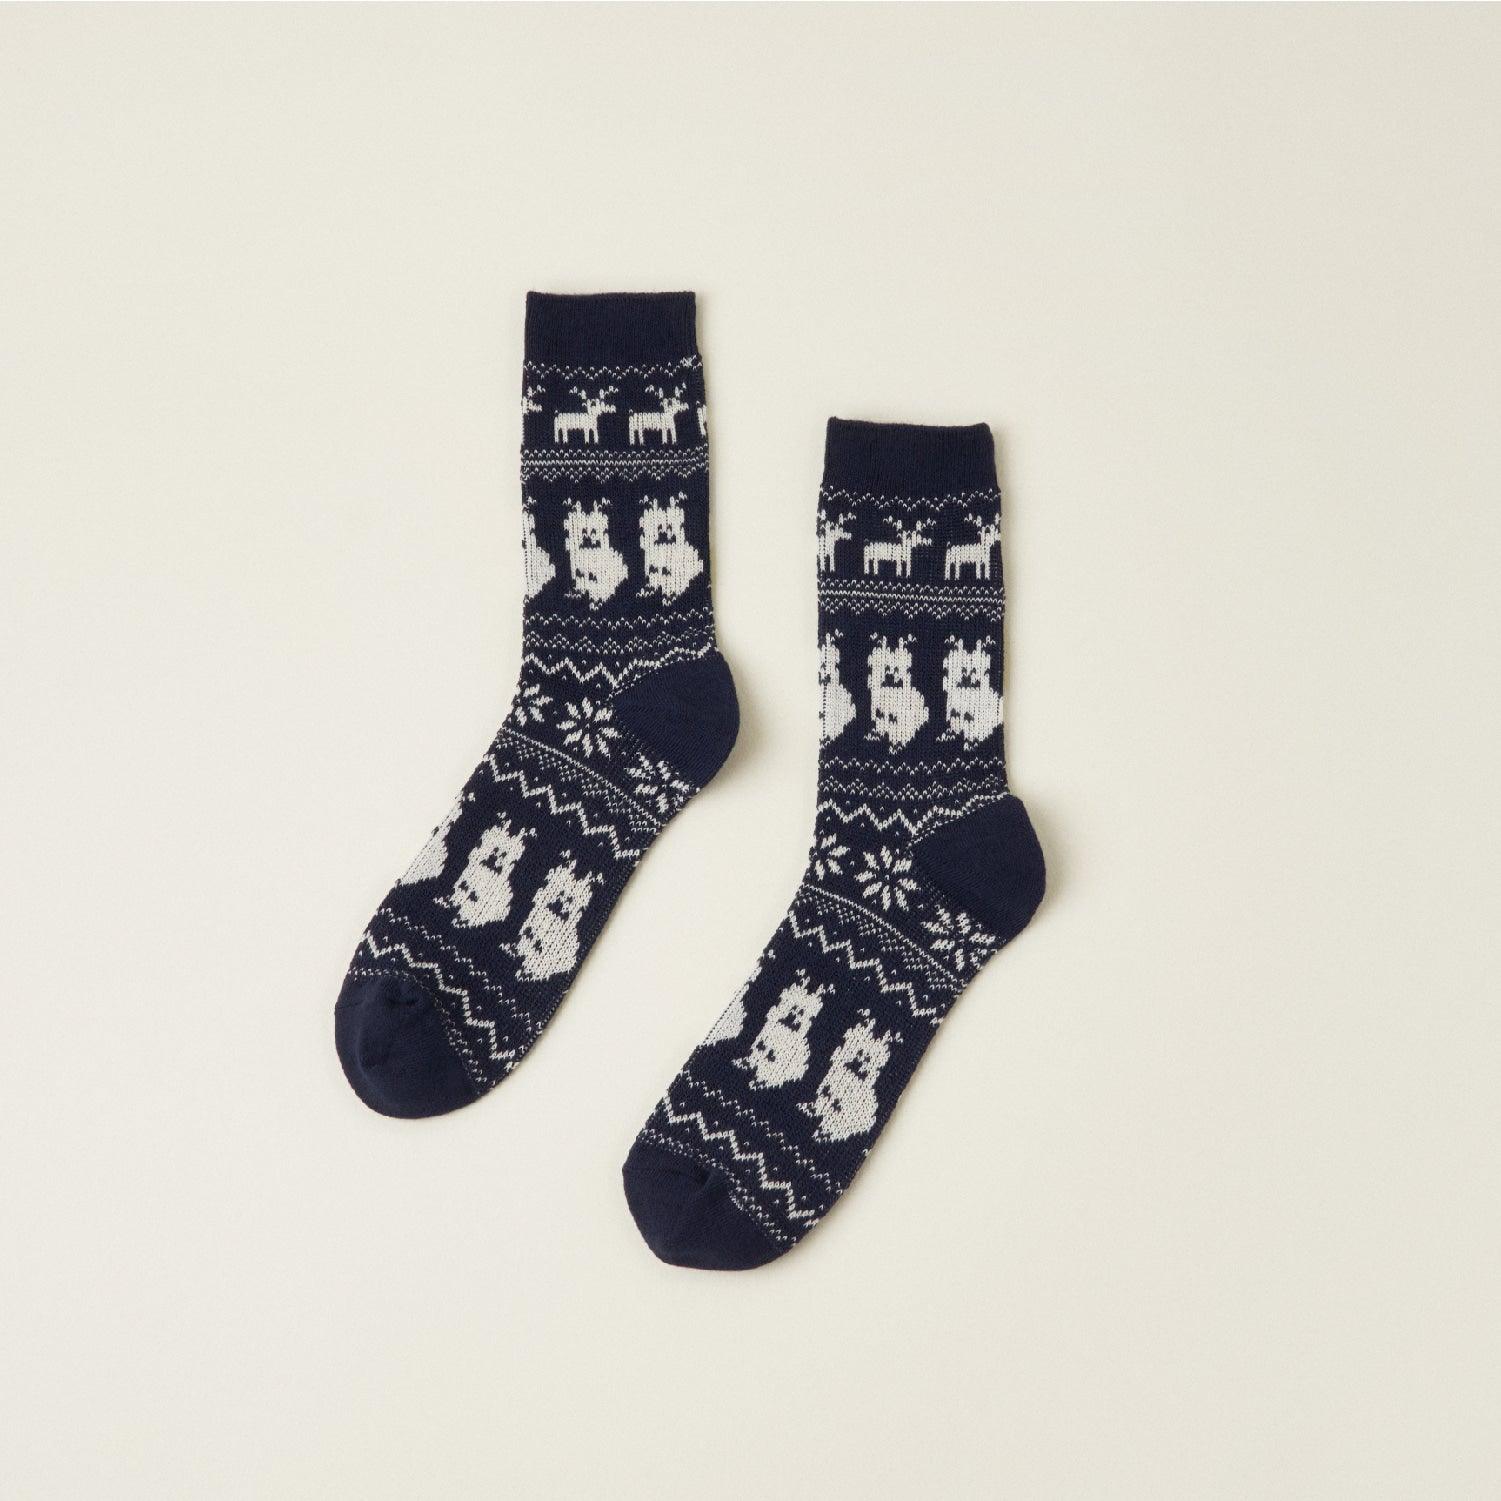 Dinotaeng Nordic Socks Package Set 襪子套裝 - SOUL SIMPLE HK